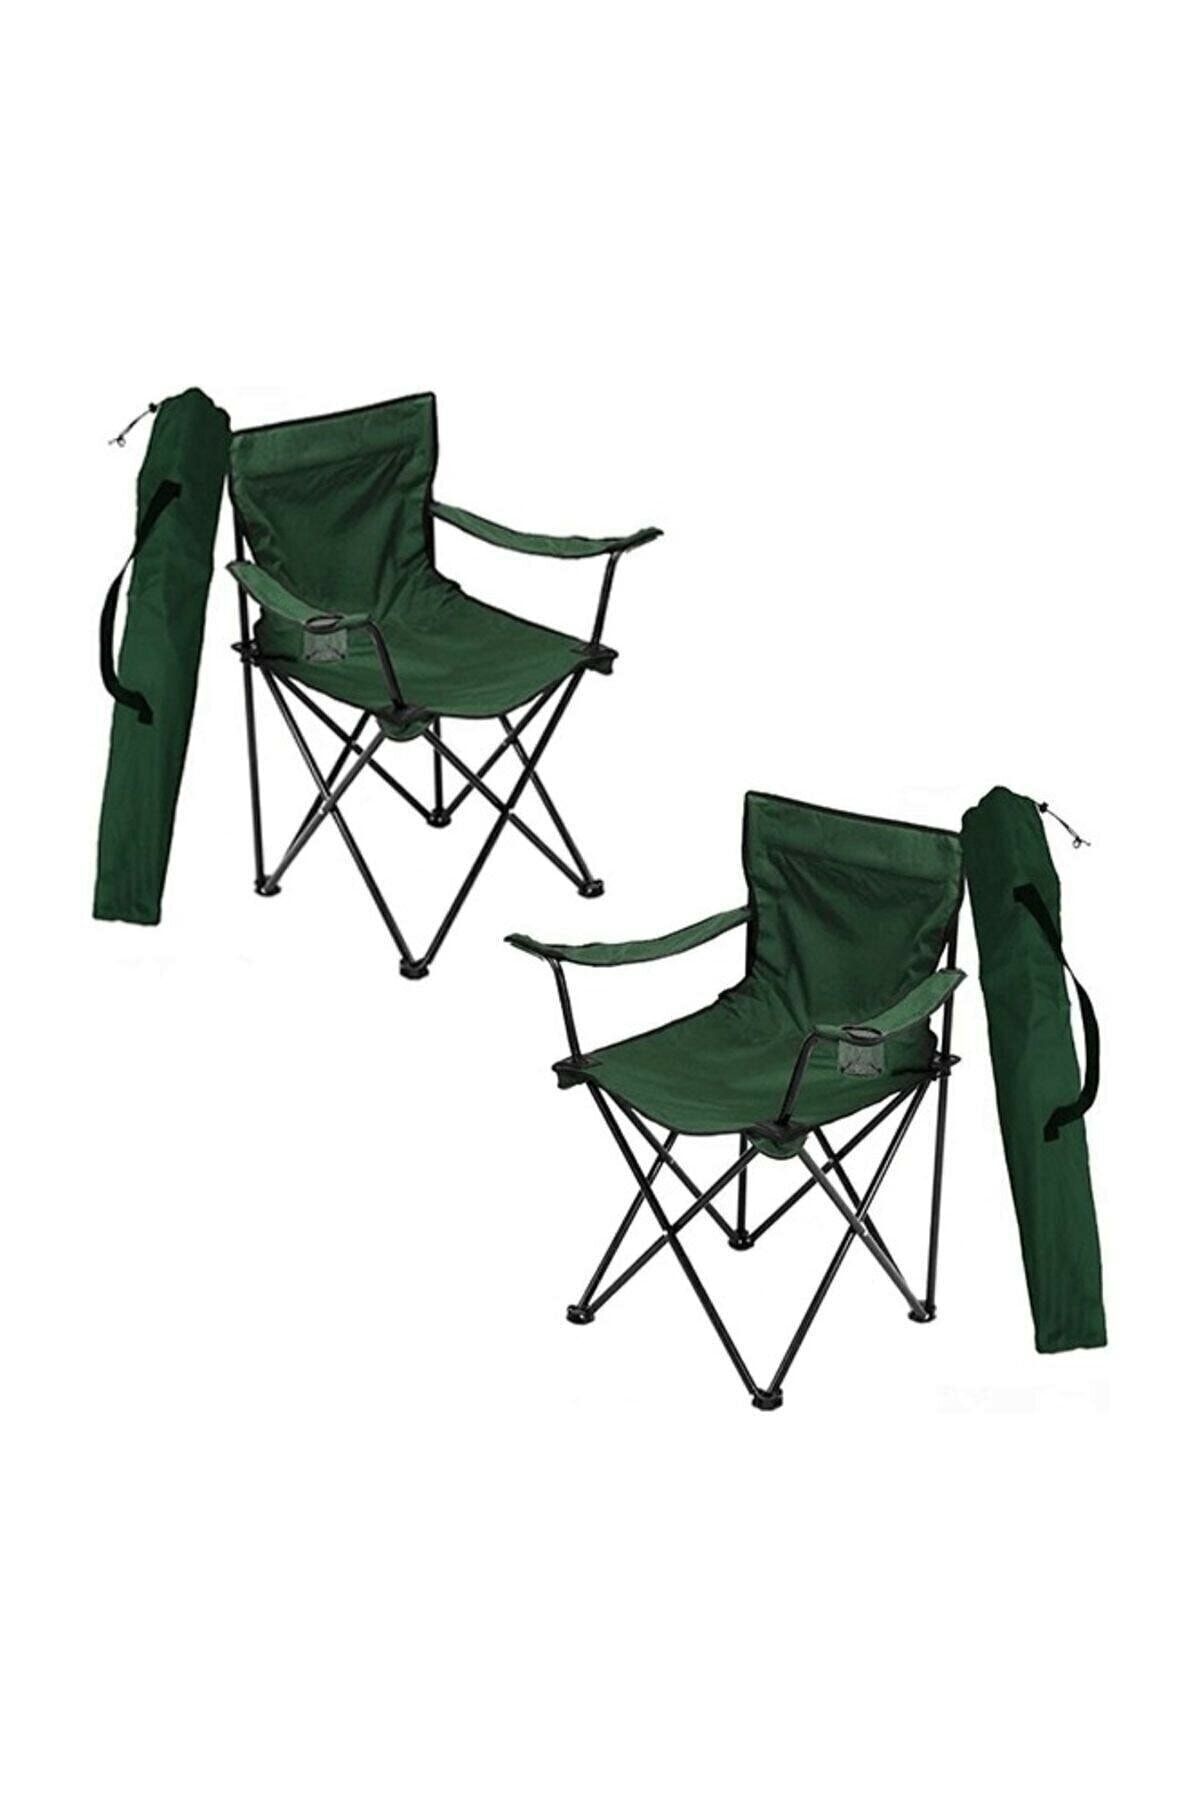 Mocca Style Plaj Ve Kamp Sandalyesi Katlanır Sandalye Bahçe Piknik Plaj Balkon Sandalyesi 2 Adet